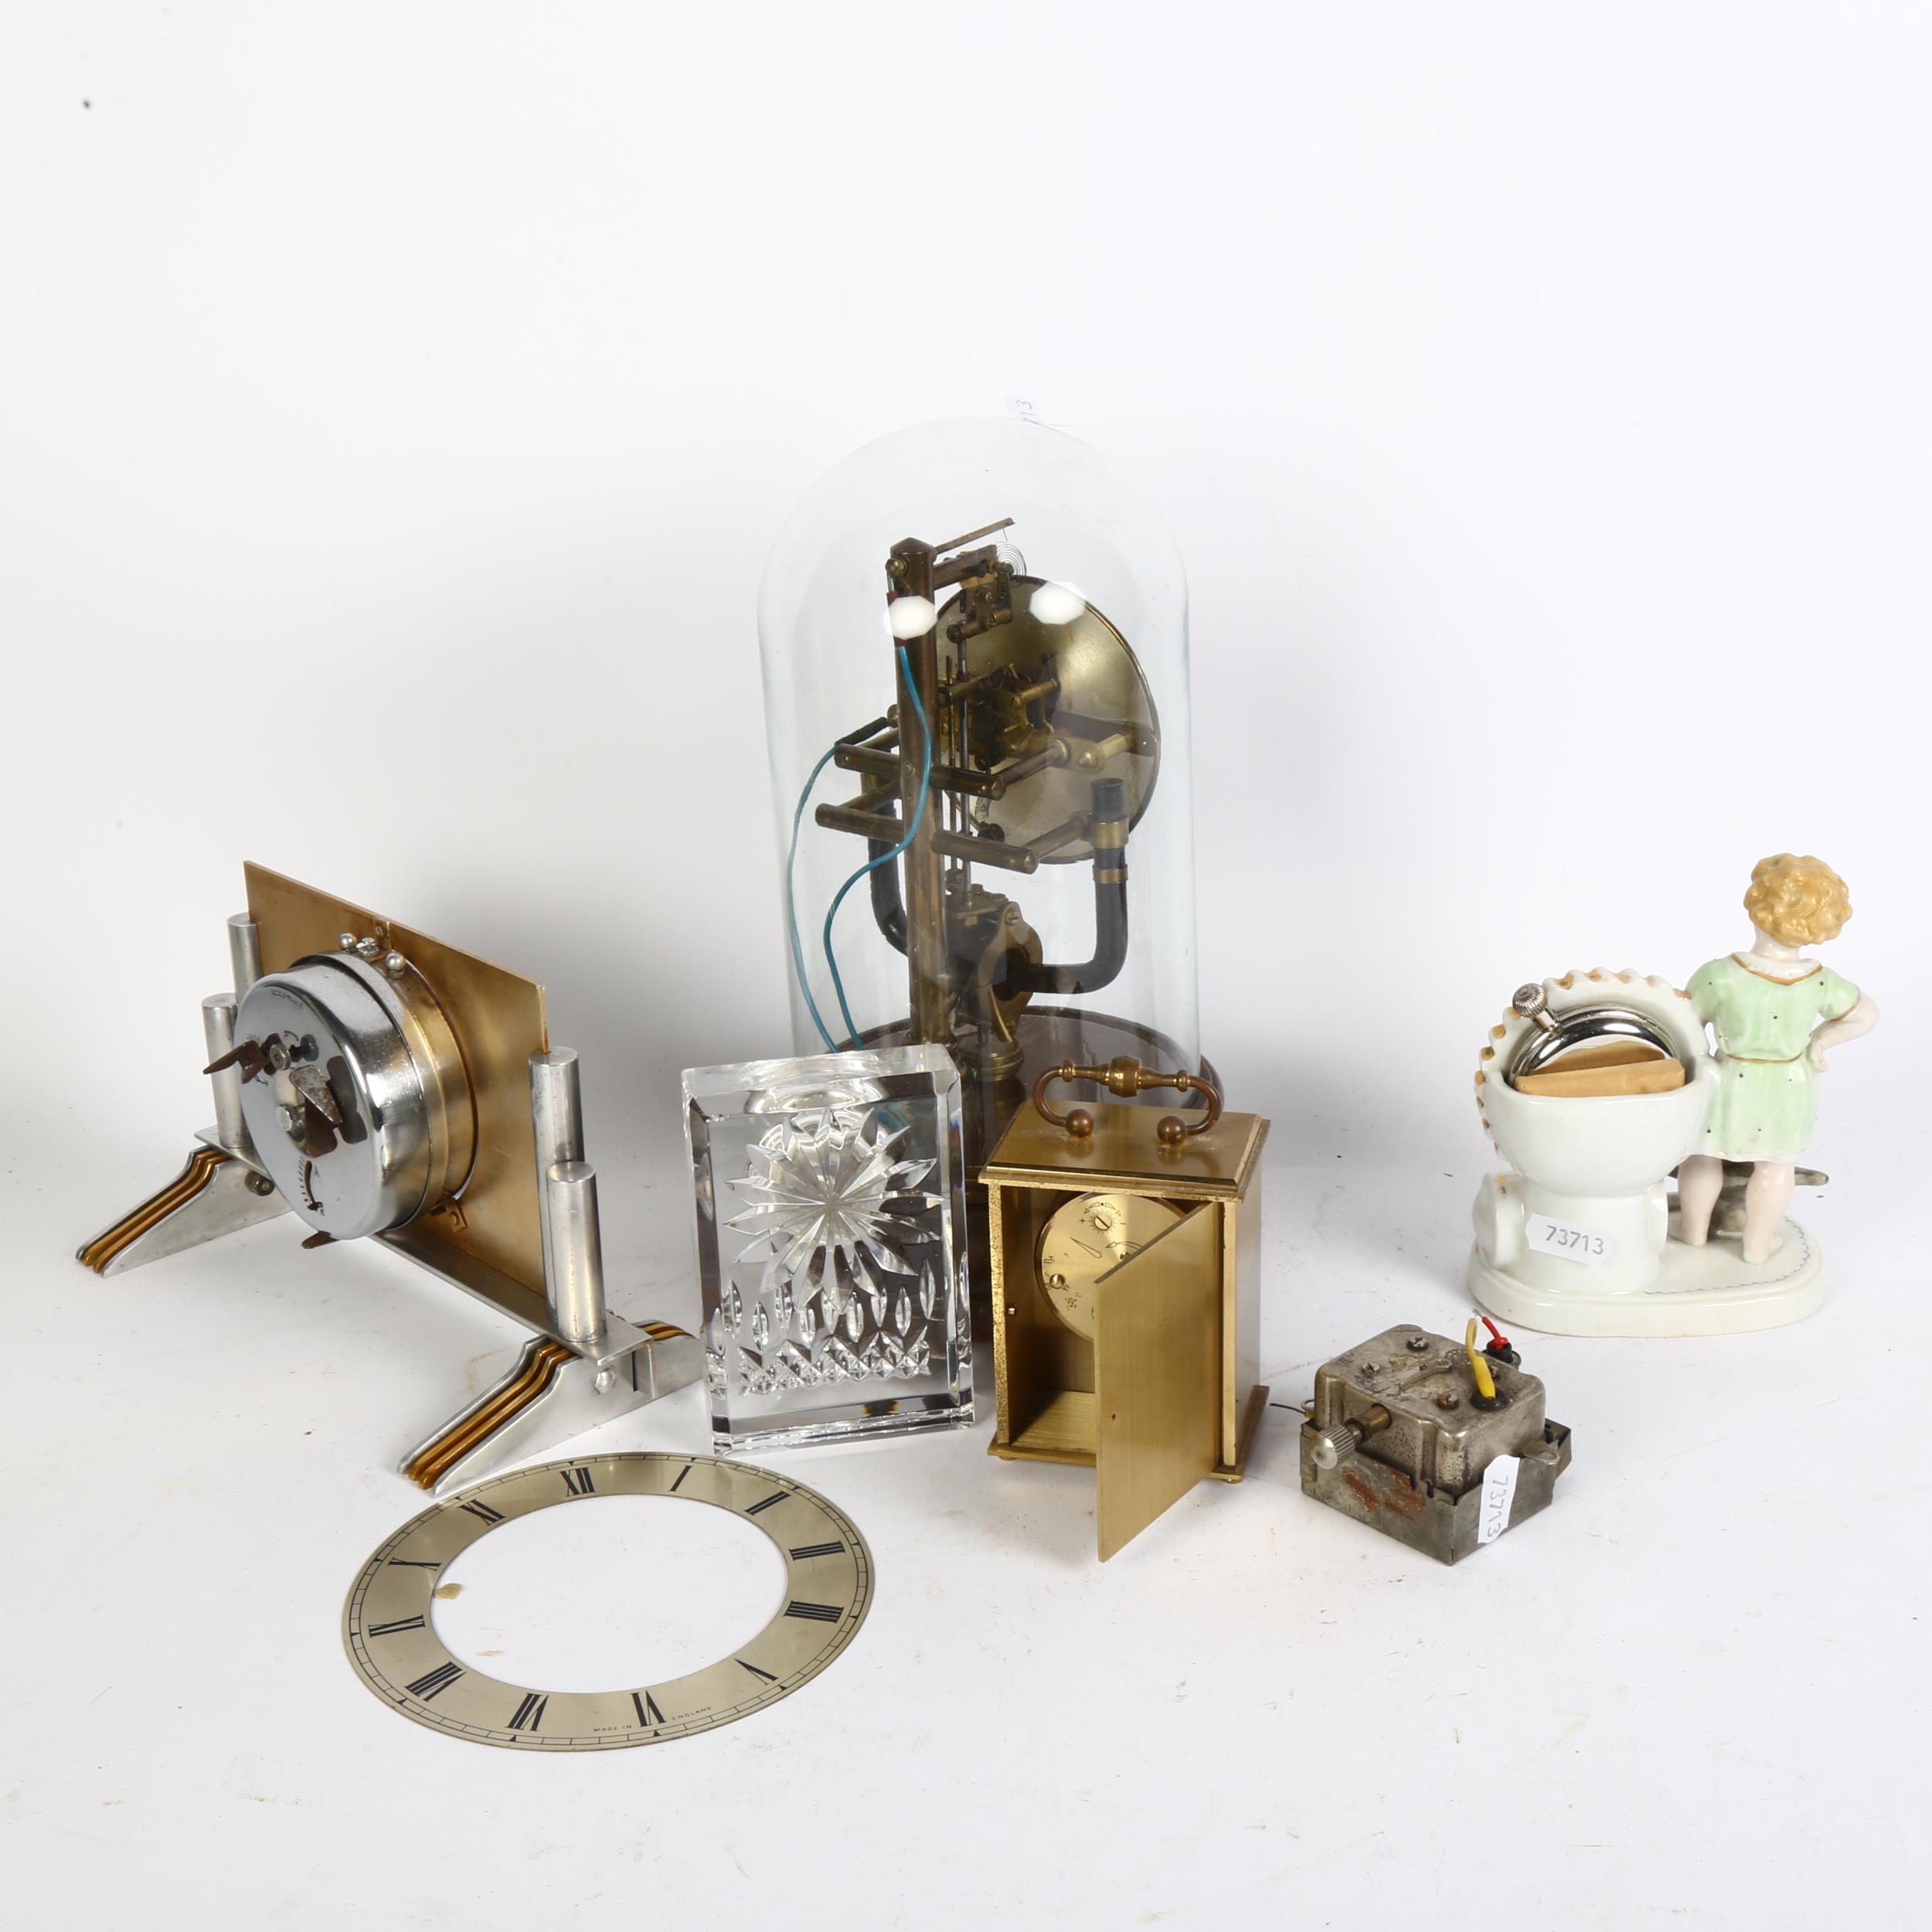 A brass 400-day clock under glass dome, H28cm, an Art Deco mantel clock, porcelain pocket watch - Bild 2 aus 2